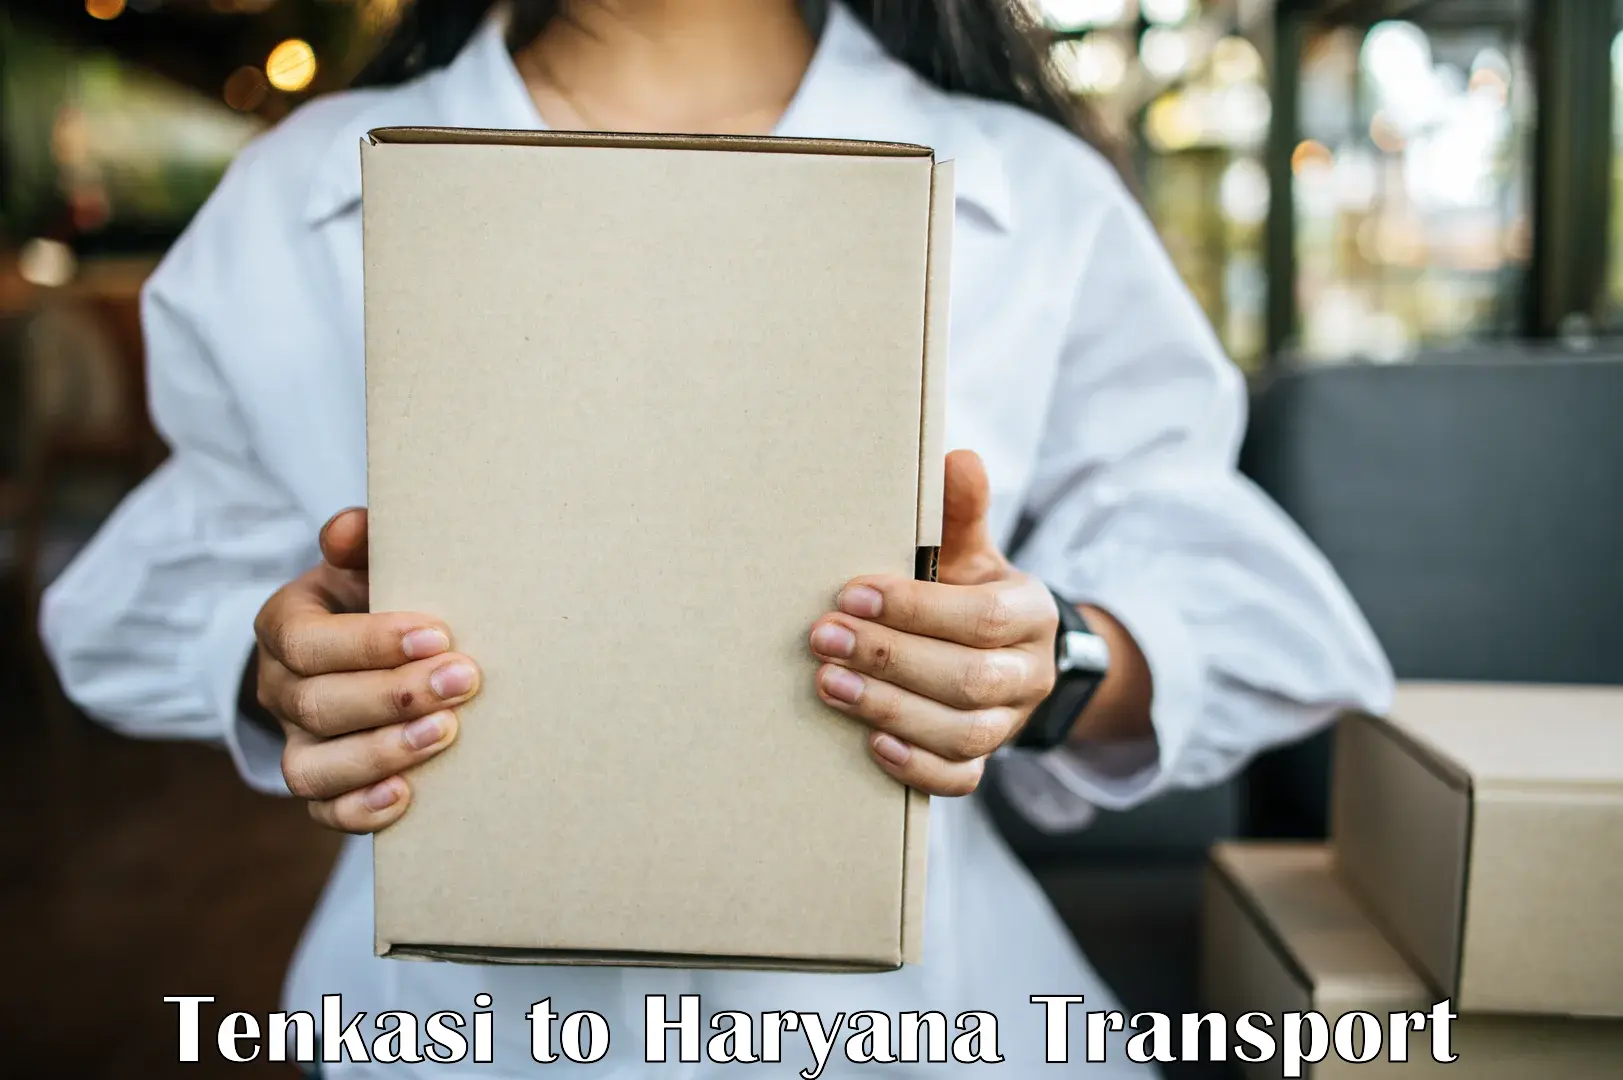 Interstate transport services Tenkasi to Hansi